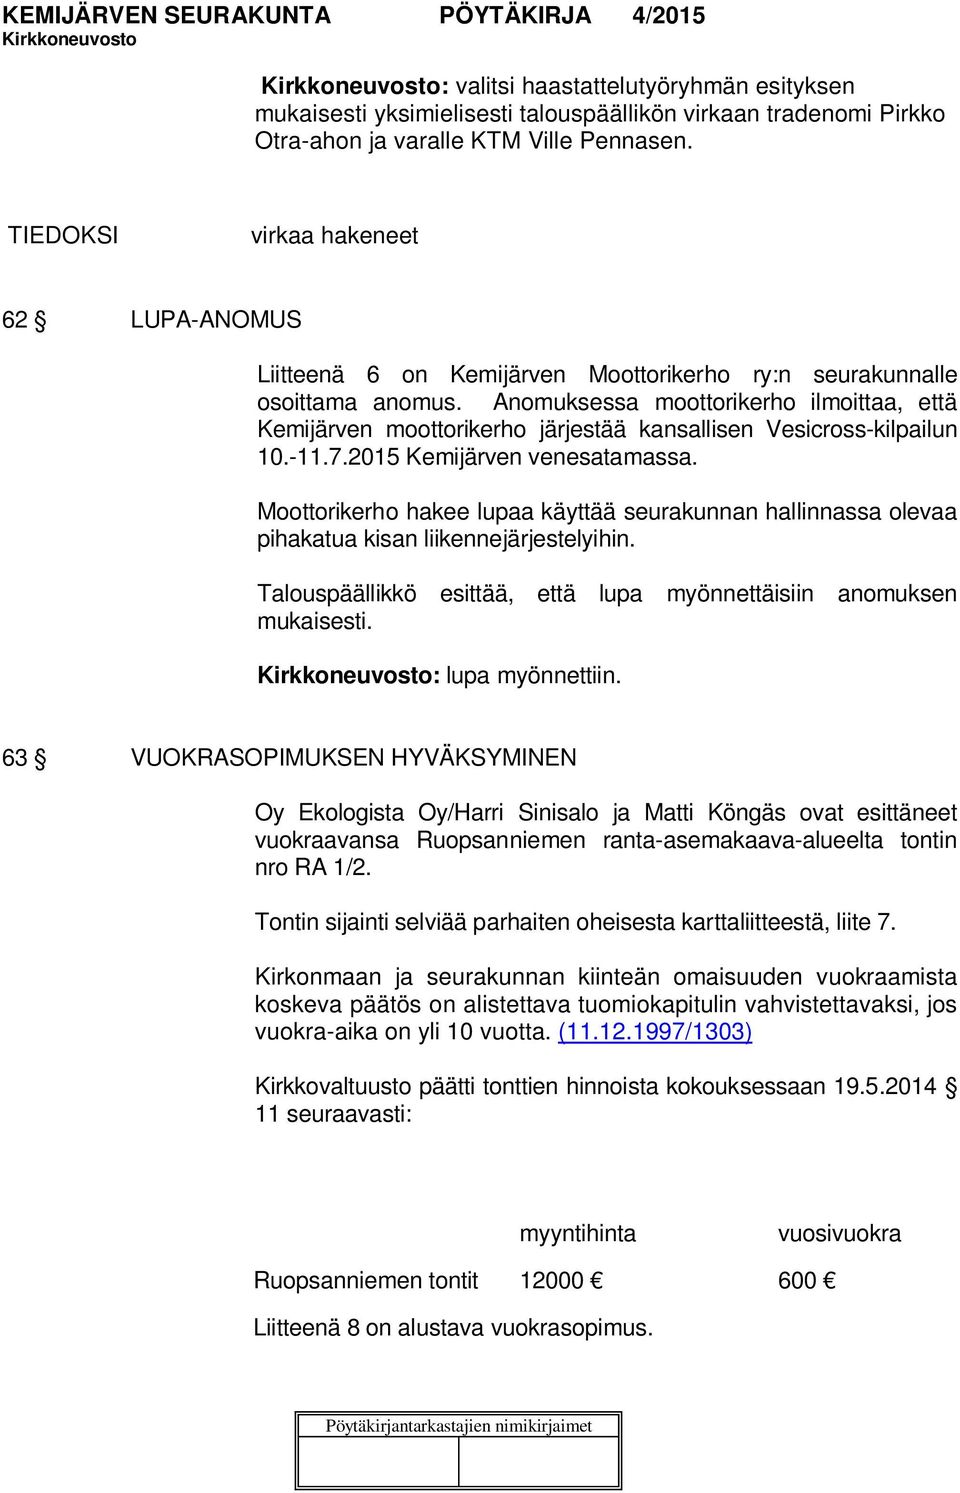 Anomuksessa moottorikerho ilmoittaa, että Kemijärven moottorikerho järjestää kansallisen Vesicross-kilpailun 10.-11.7.2015 Kemijärven venesatamassa.